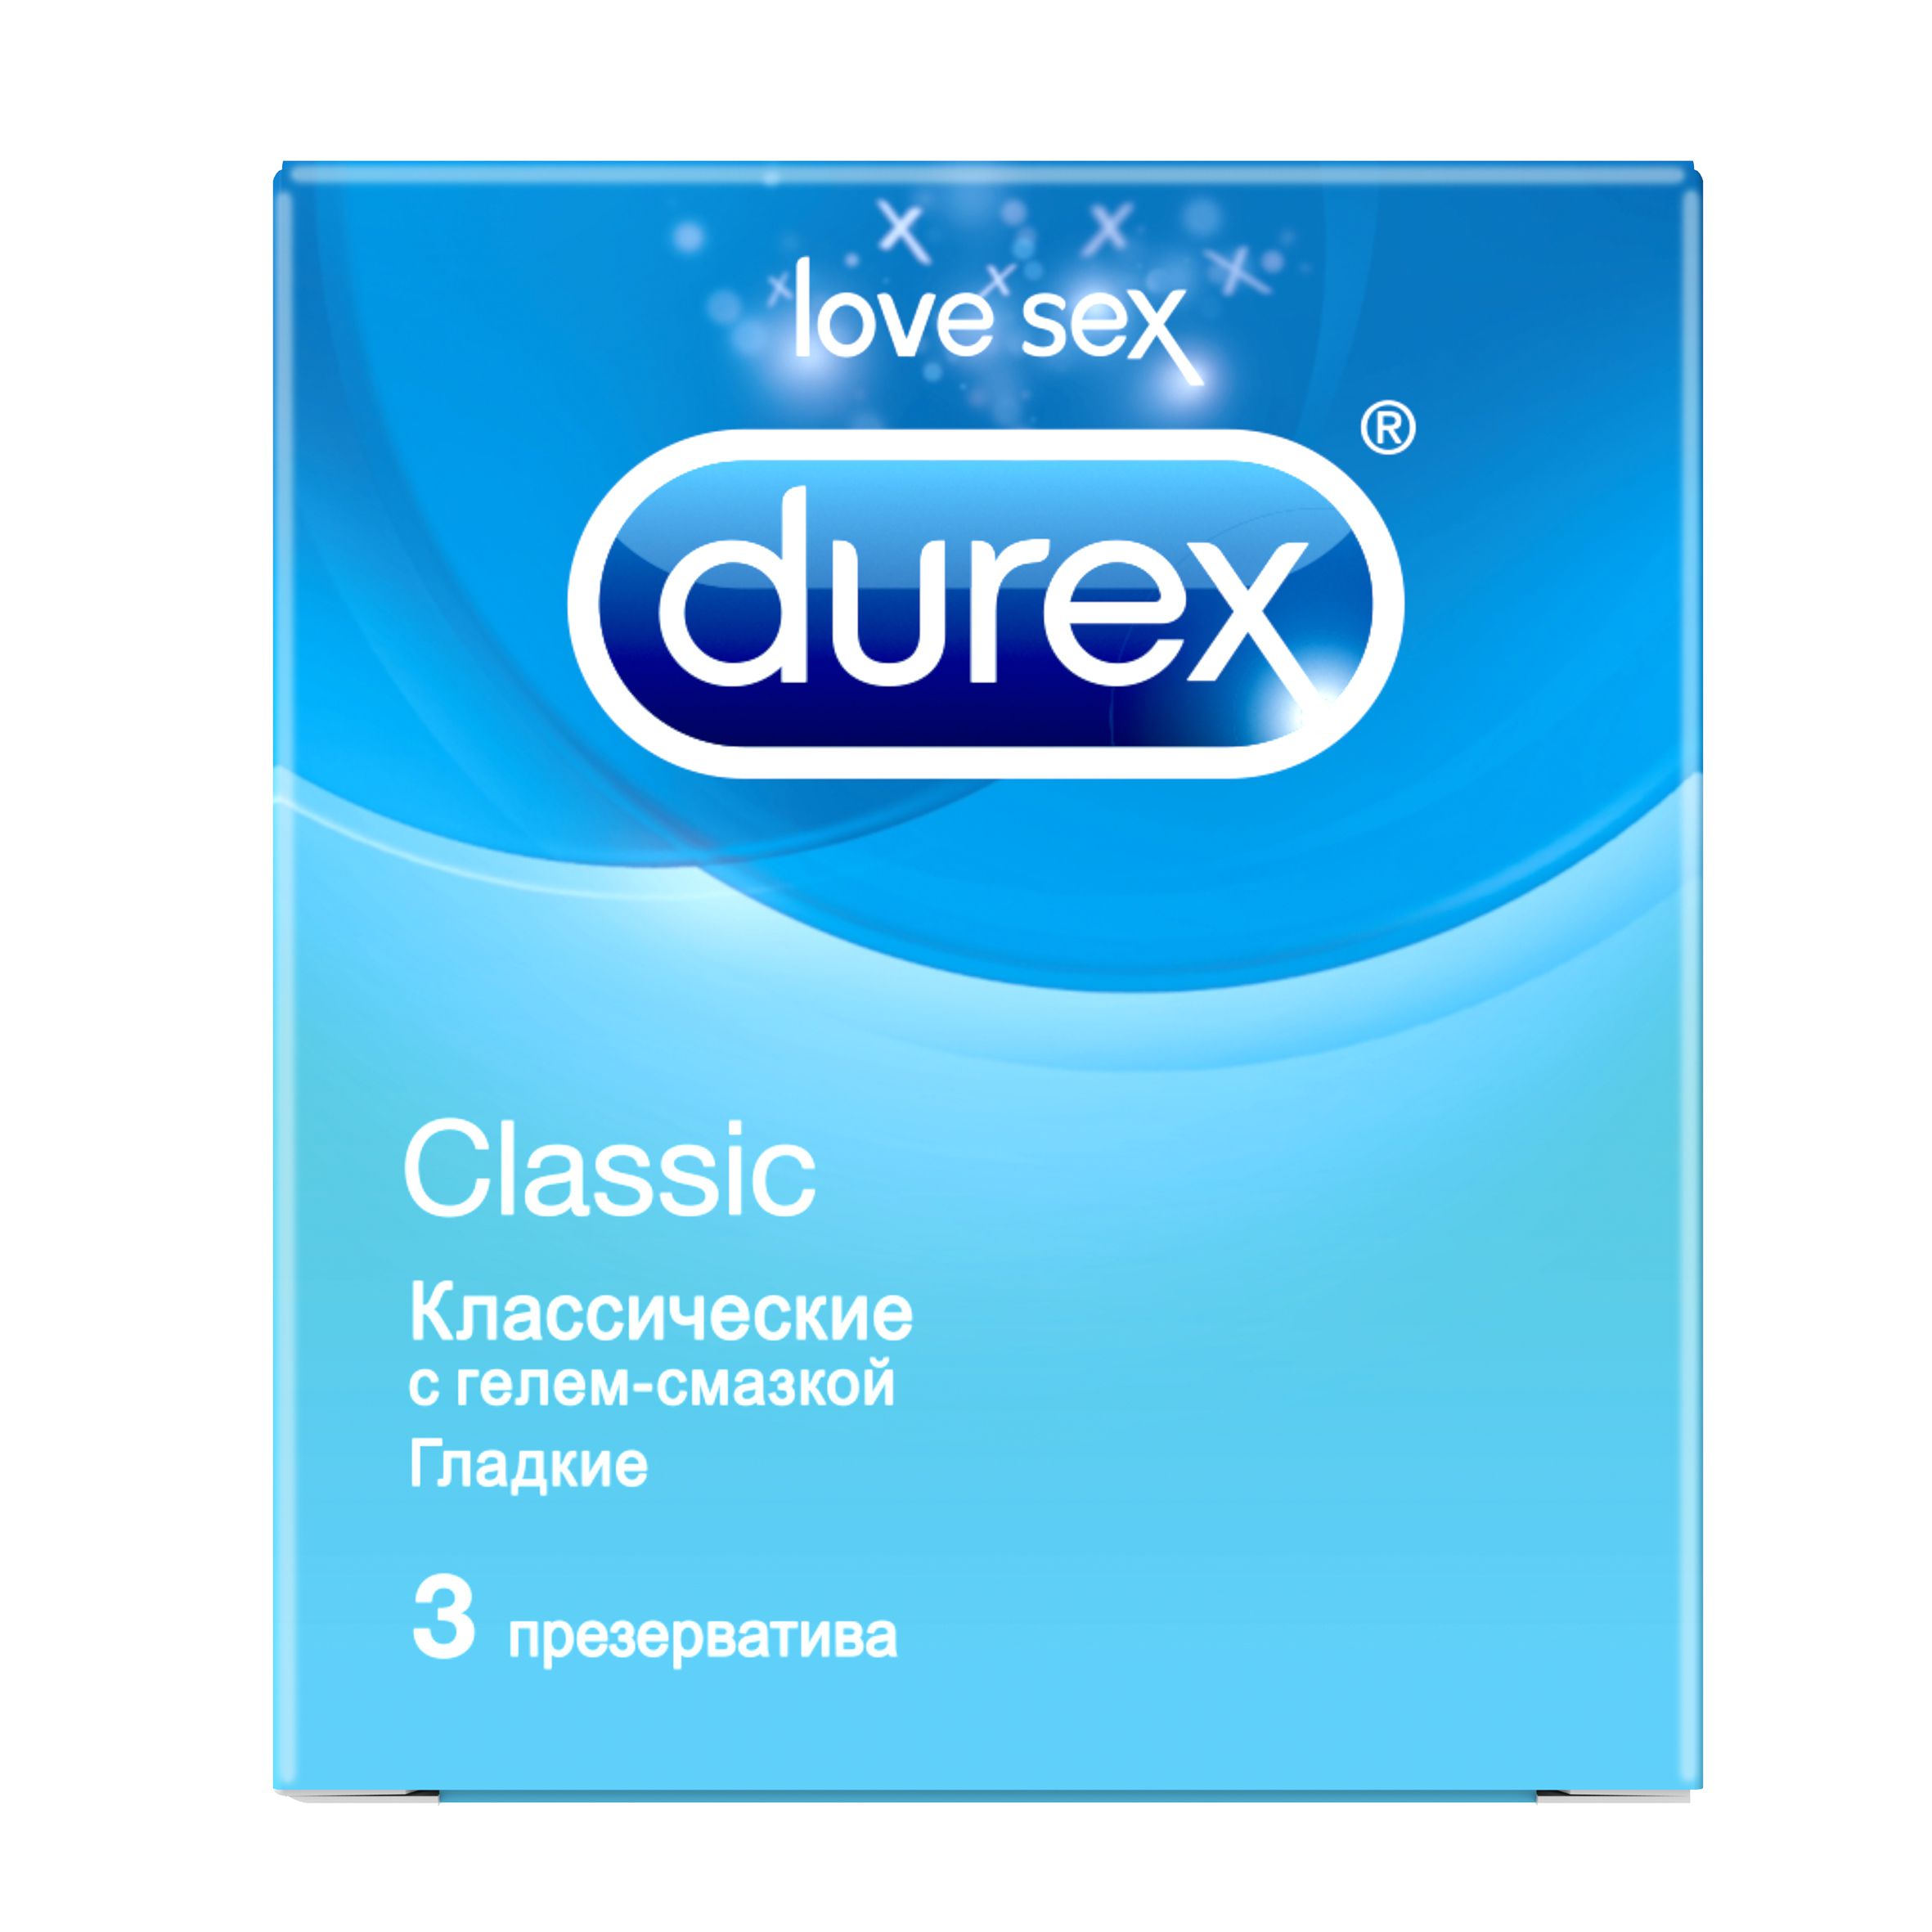 Durex Classic (Дюрекс Классик): описание презервативов, цена и отзывы покупателей